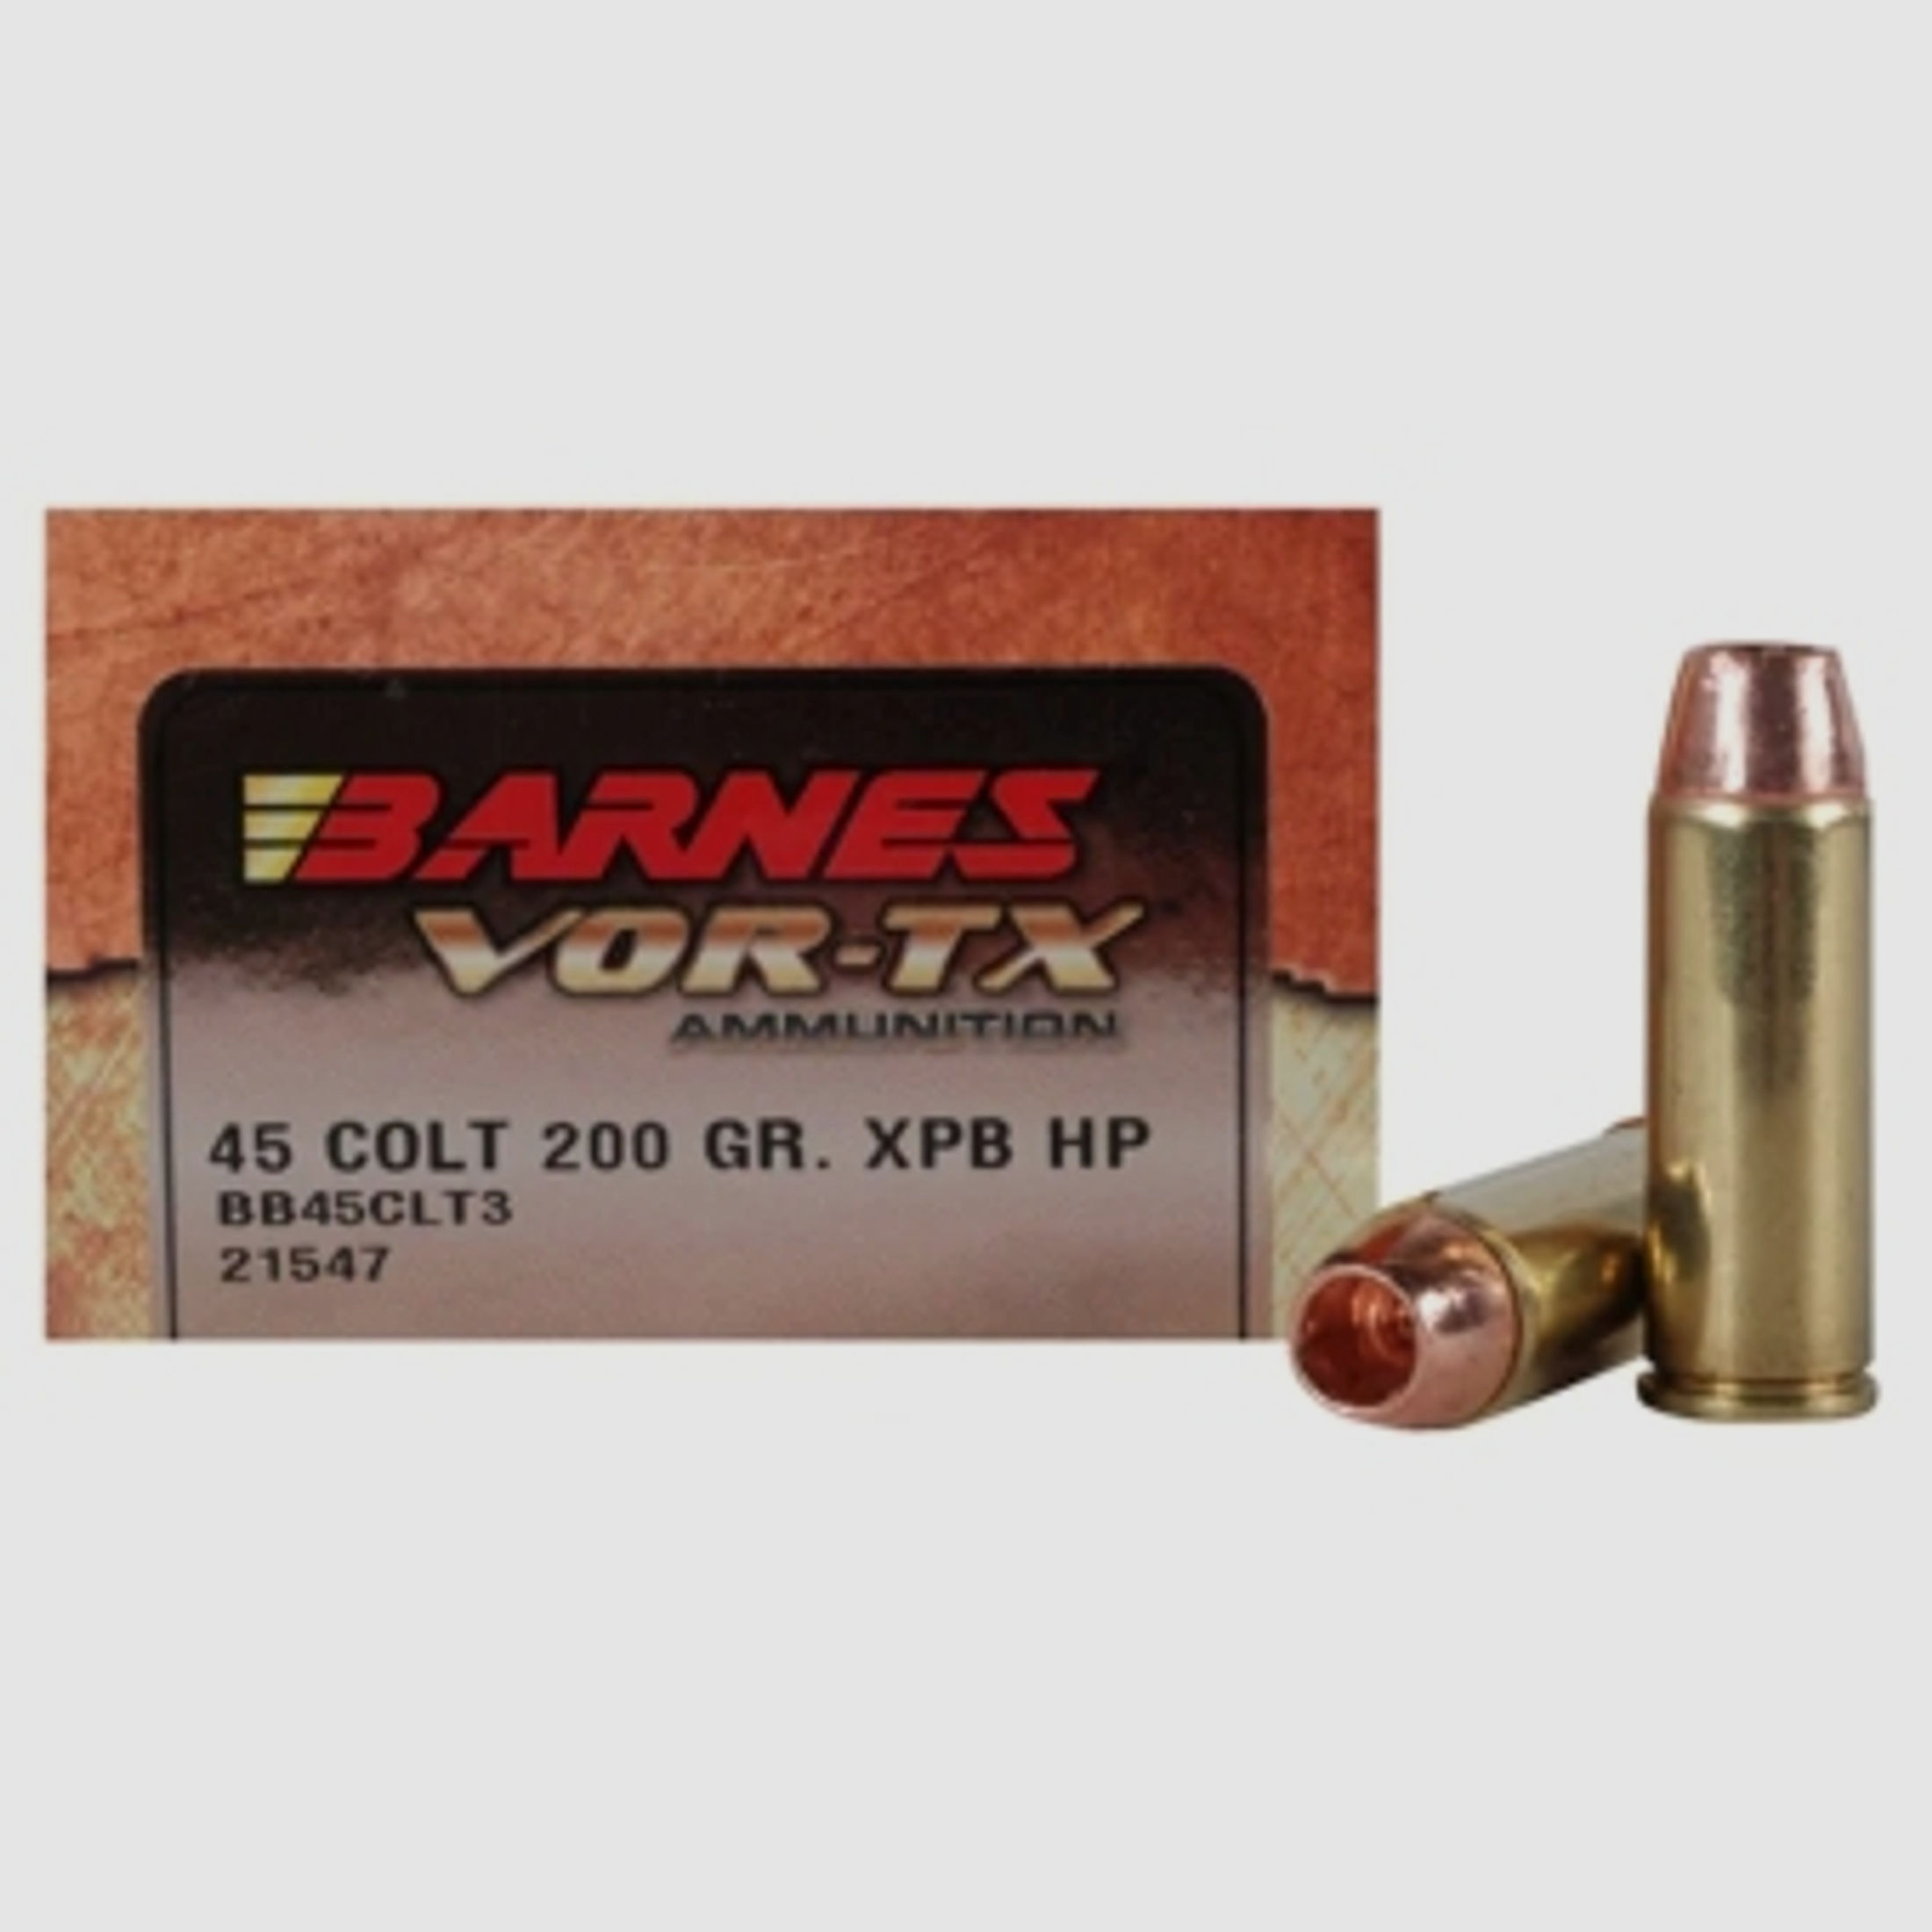 Barnes VOR-TX .45 Colt 200GR XPB Hollow Point 20 Patronen